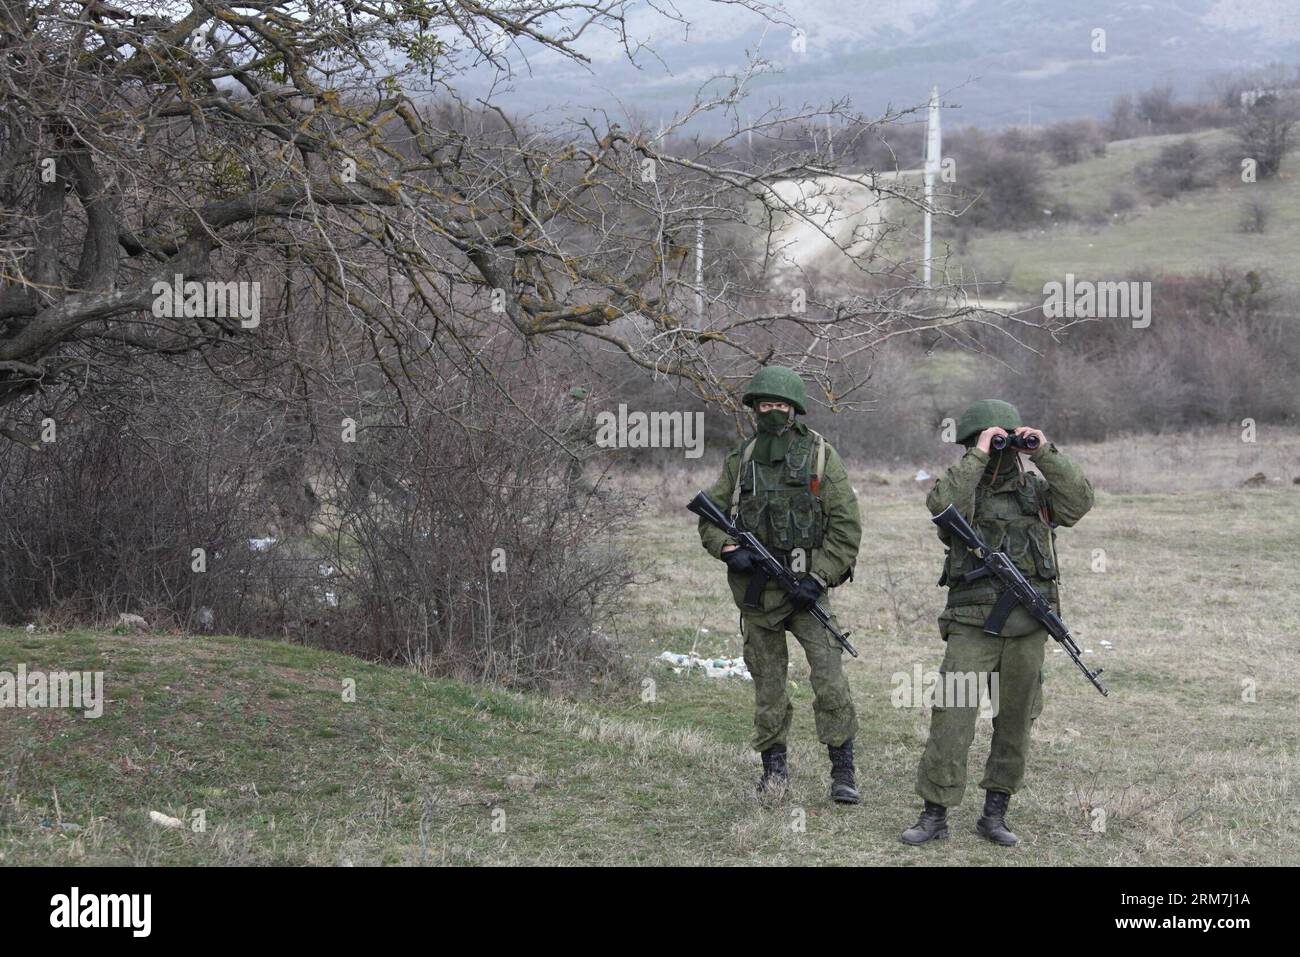 (140305) -- SIMFEROPOL, 5. März 2014 (Xinhua) -- bewaffnete Männer patrouillieren vor einer ukrainischen Militäreinheit im Vorort Simferopol, Hauptstadt der autonomen republik Krim der Ukraine, 4. März 2014. (Xinhua/Wei Dafang) (lyx) UKRAINE-SIMFEROPOL-MILITÄREINHEIT BEWAFFNETE MÄNNER PUBLICATIONxNOTxINxCHN Simferopol 5. März 2014 XINHUA BEWAFFNETE Männer Patrouille außerhalb einer ukrainischen Militäreinheit in der Vorstadt Simferopol Hauptstadt der Ukraine S Autonome Republik Krim 4. März 2014 XINNOHUA Wei DeixBLINxMUNIxMUNIxMUNIxMUNIxMUNIxMUNKUNKUNKUNKUNKUNKUNKUNS Stockfoto